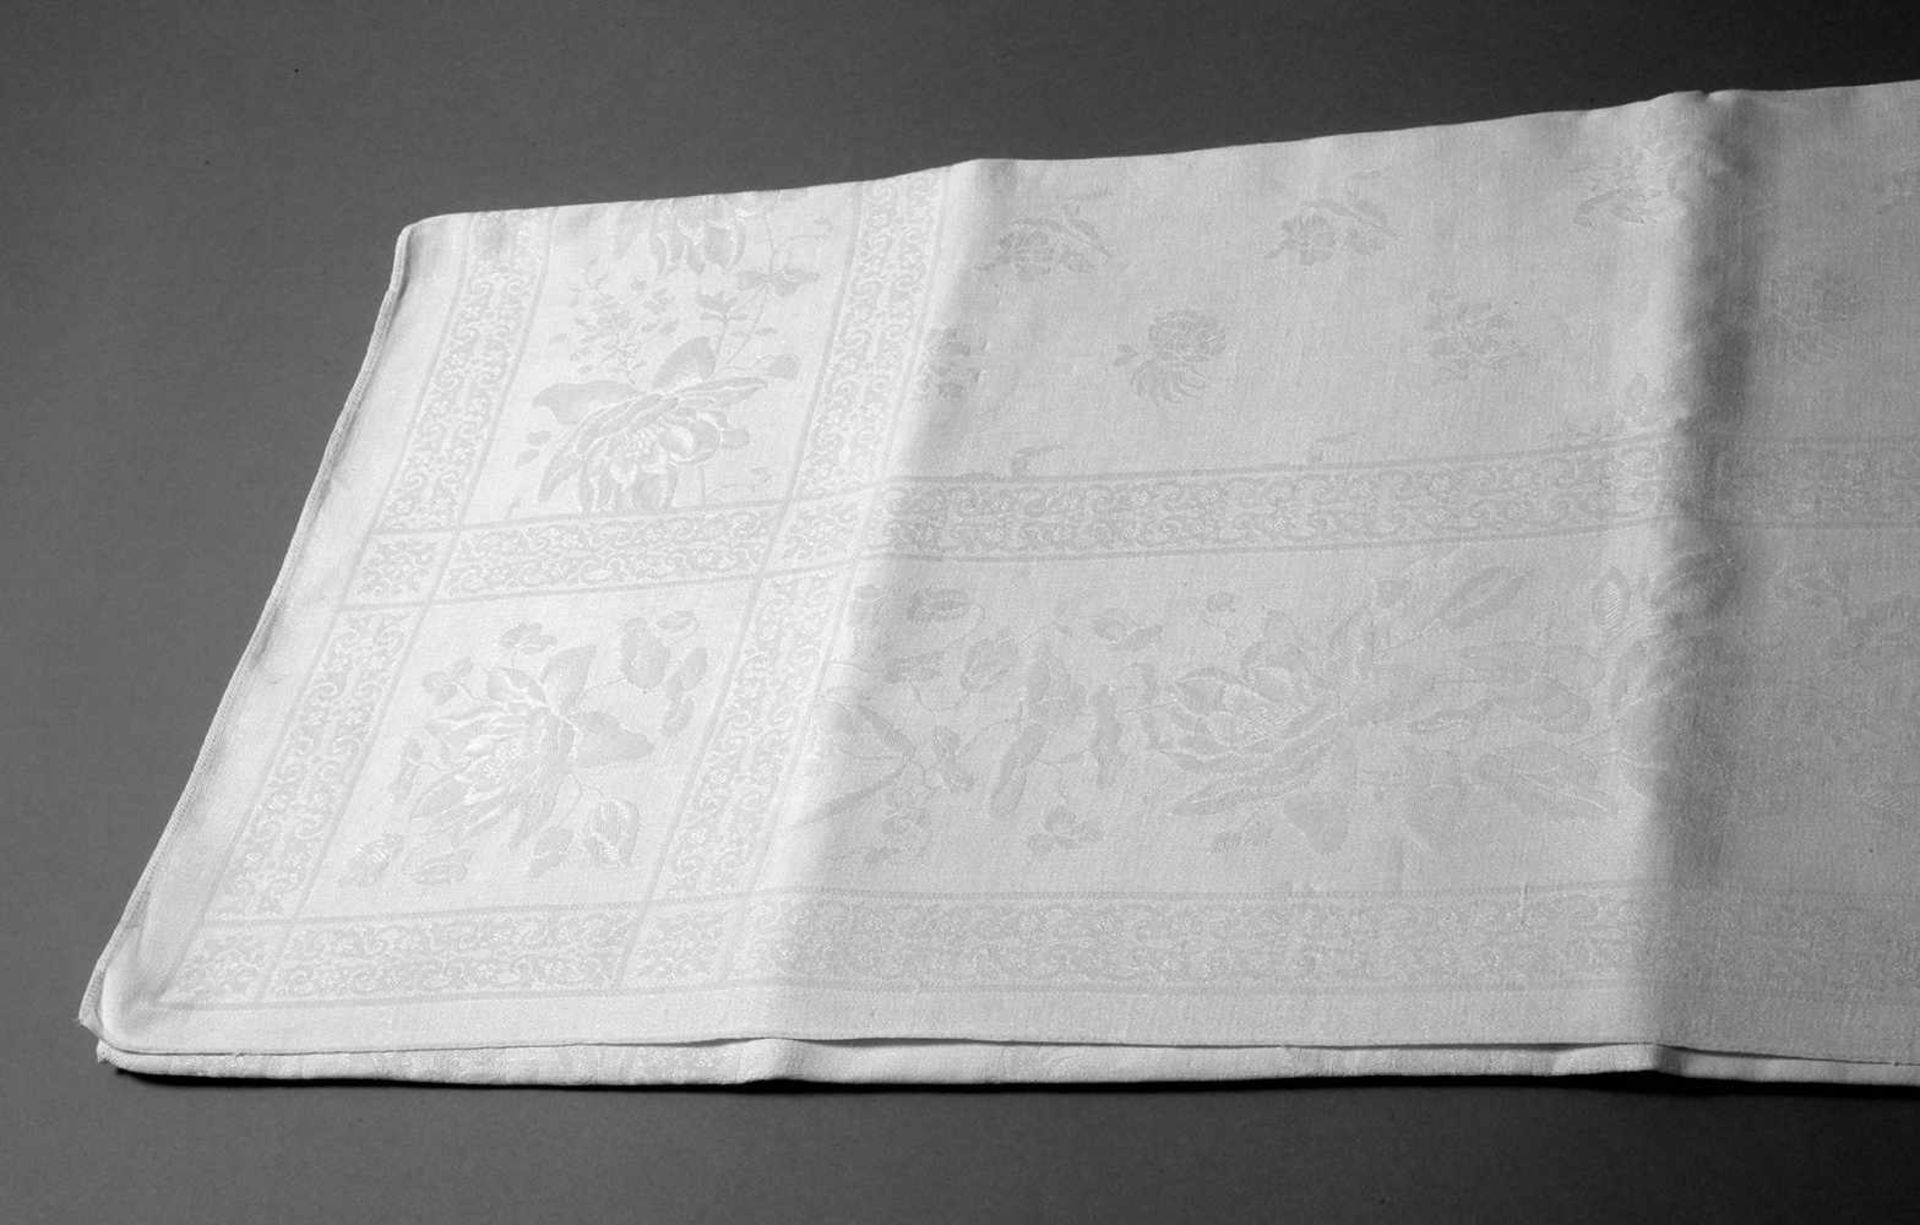 Tafeltuchum 1910, cremeweißer Halbleinendamast mit eingewebtem Floralmotiv, das Mittelfeld